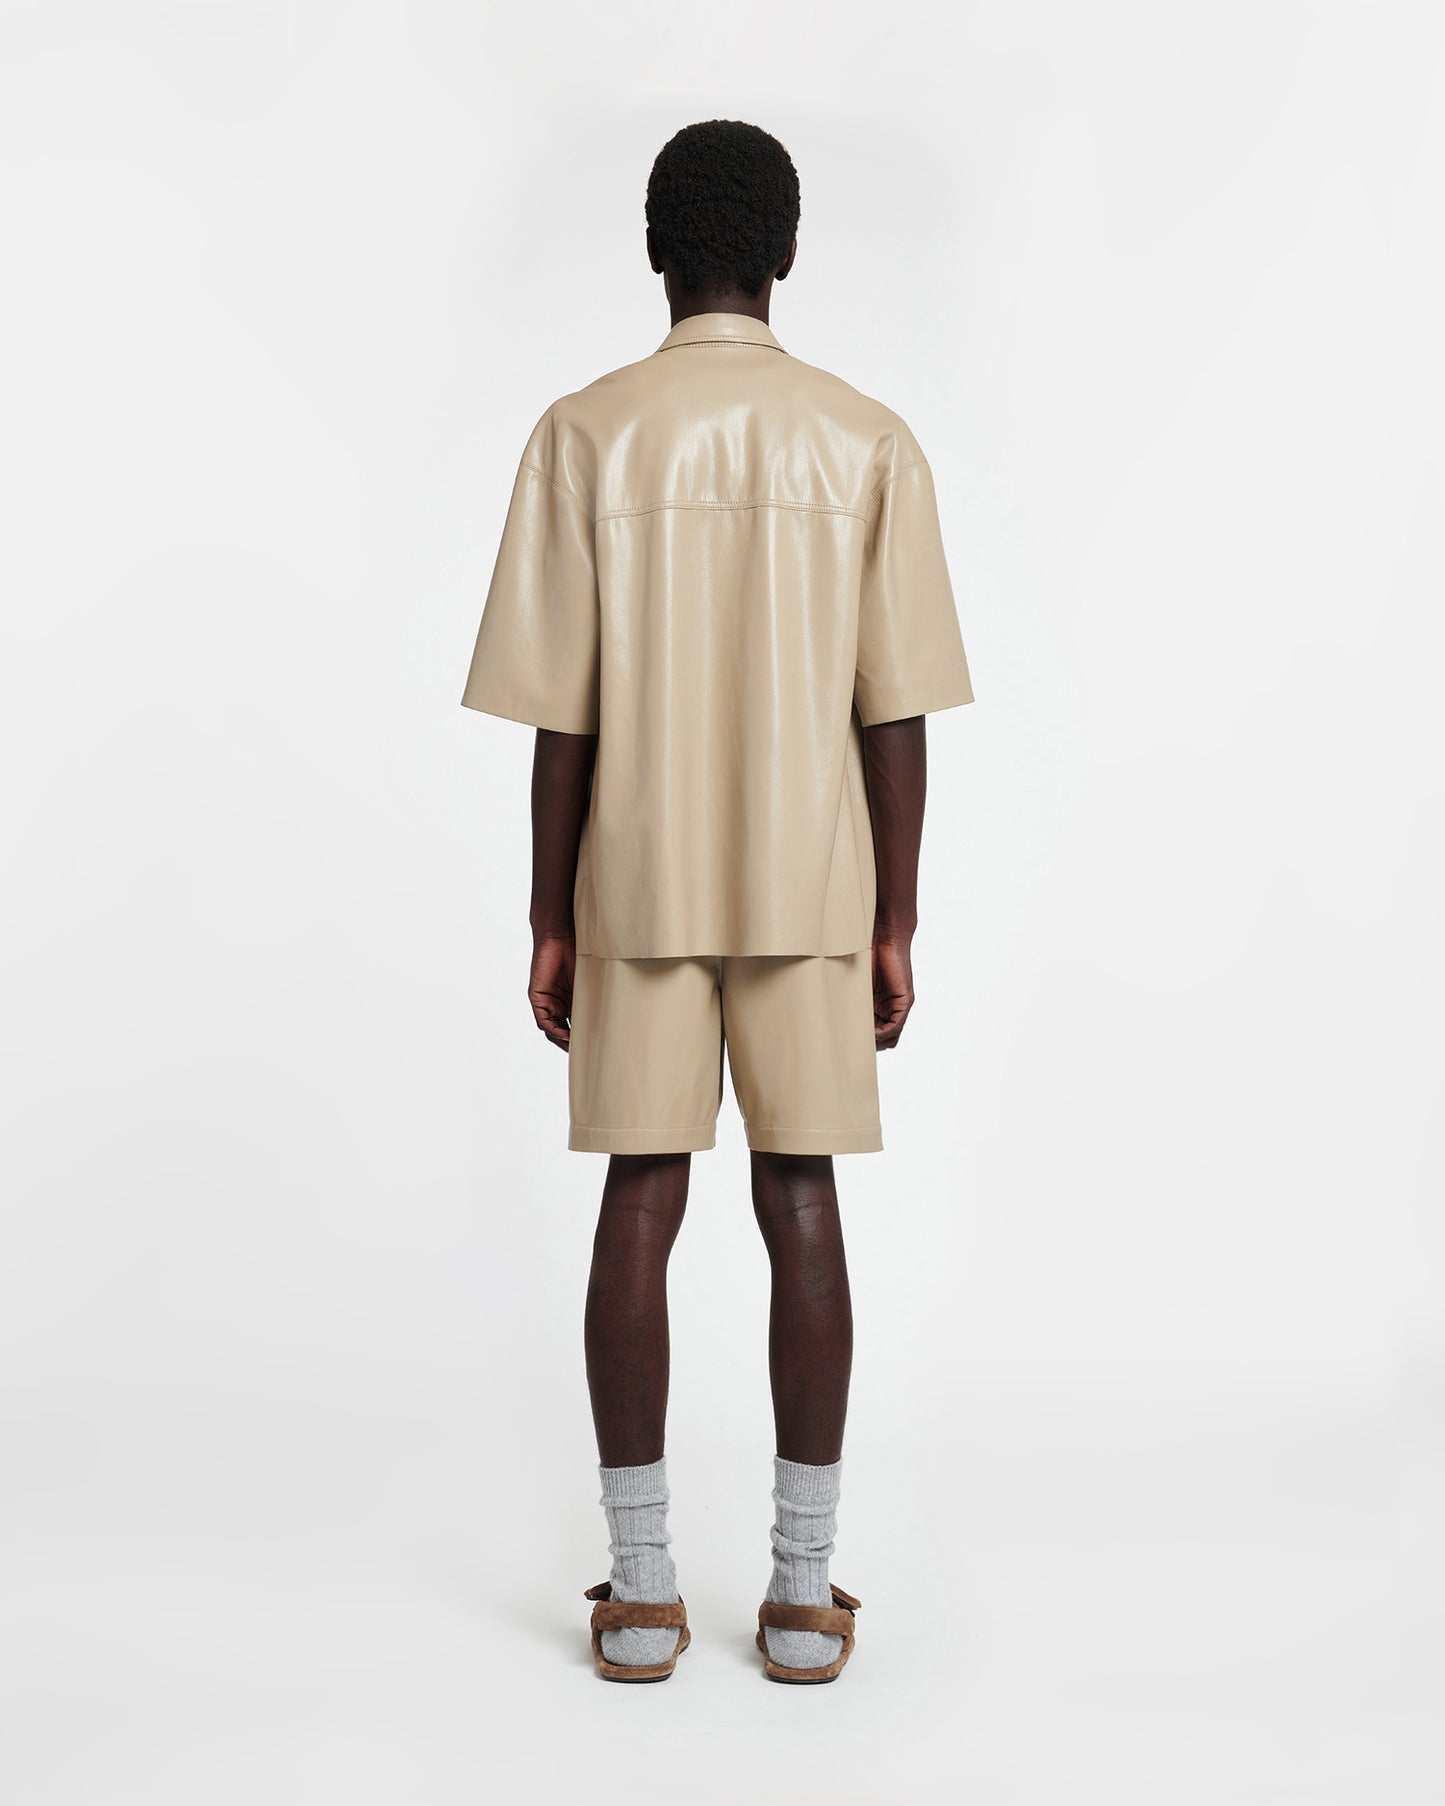 Doxxi - Okobor™ Alt-Leather Shorts - Ashy Taupe